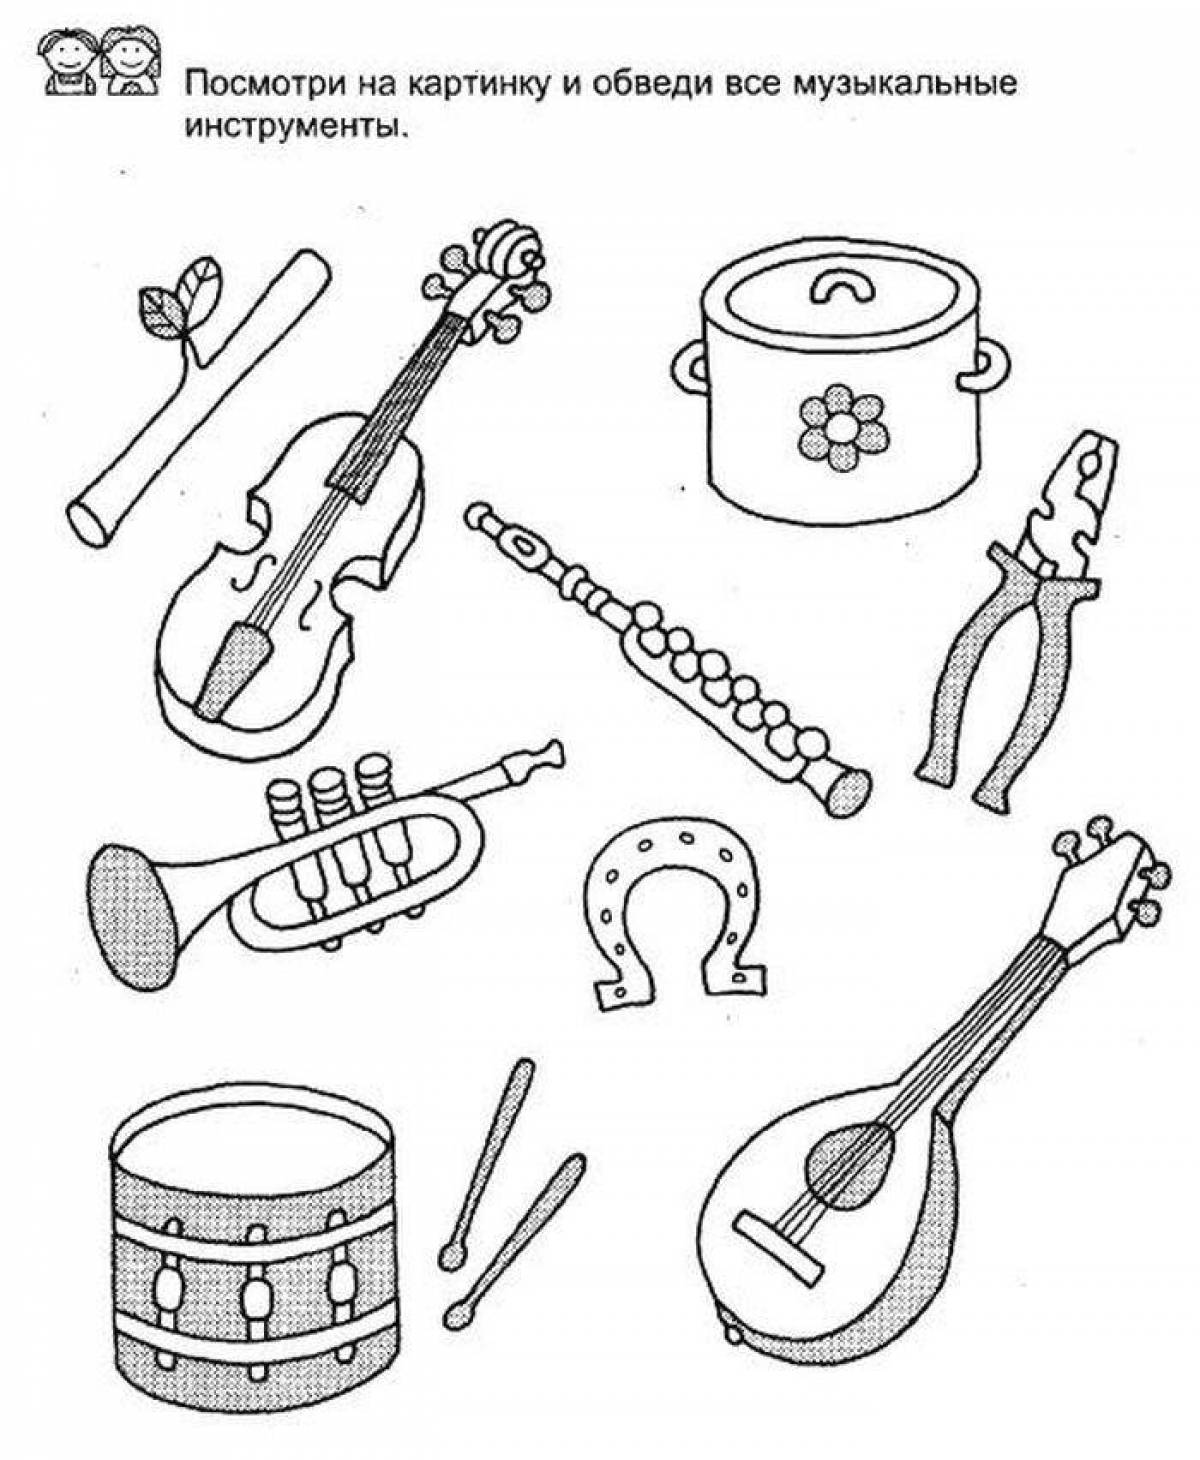 Учим музыкальные инструменты. Музыкальные инструменты задания. Музыкальные инструменты задания для детей. Инструменты задания для детей. Муз инструменты задания для дошкольников.